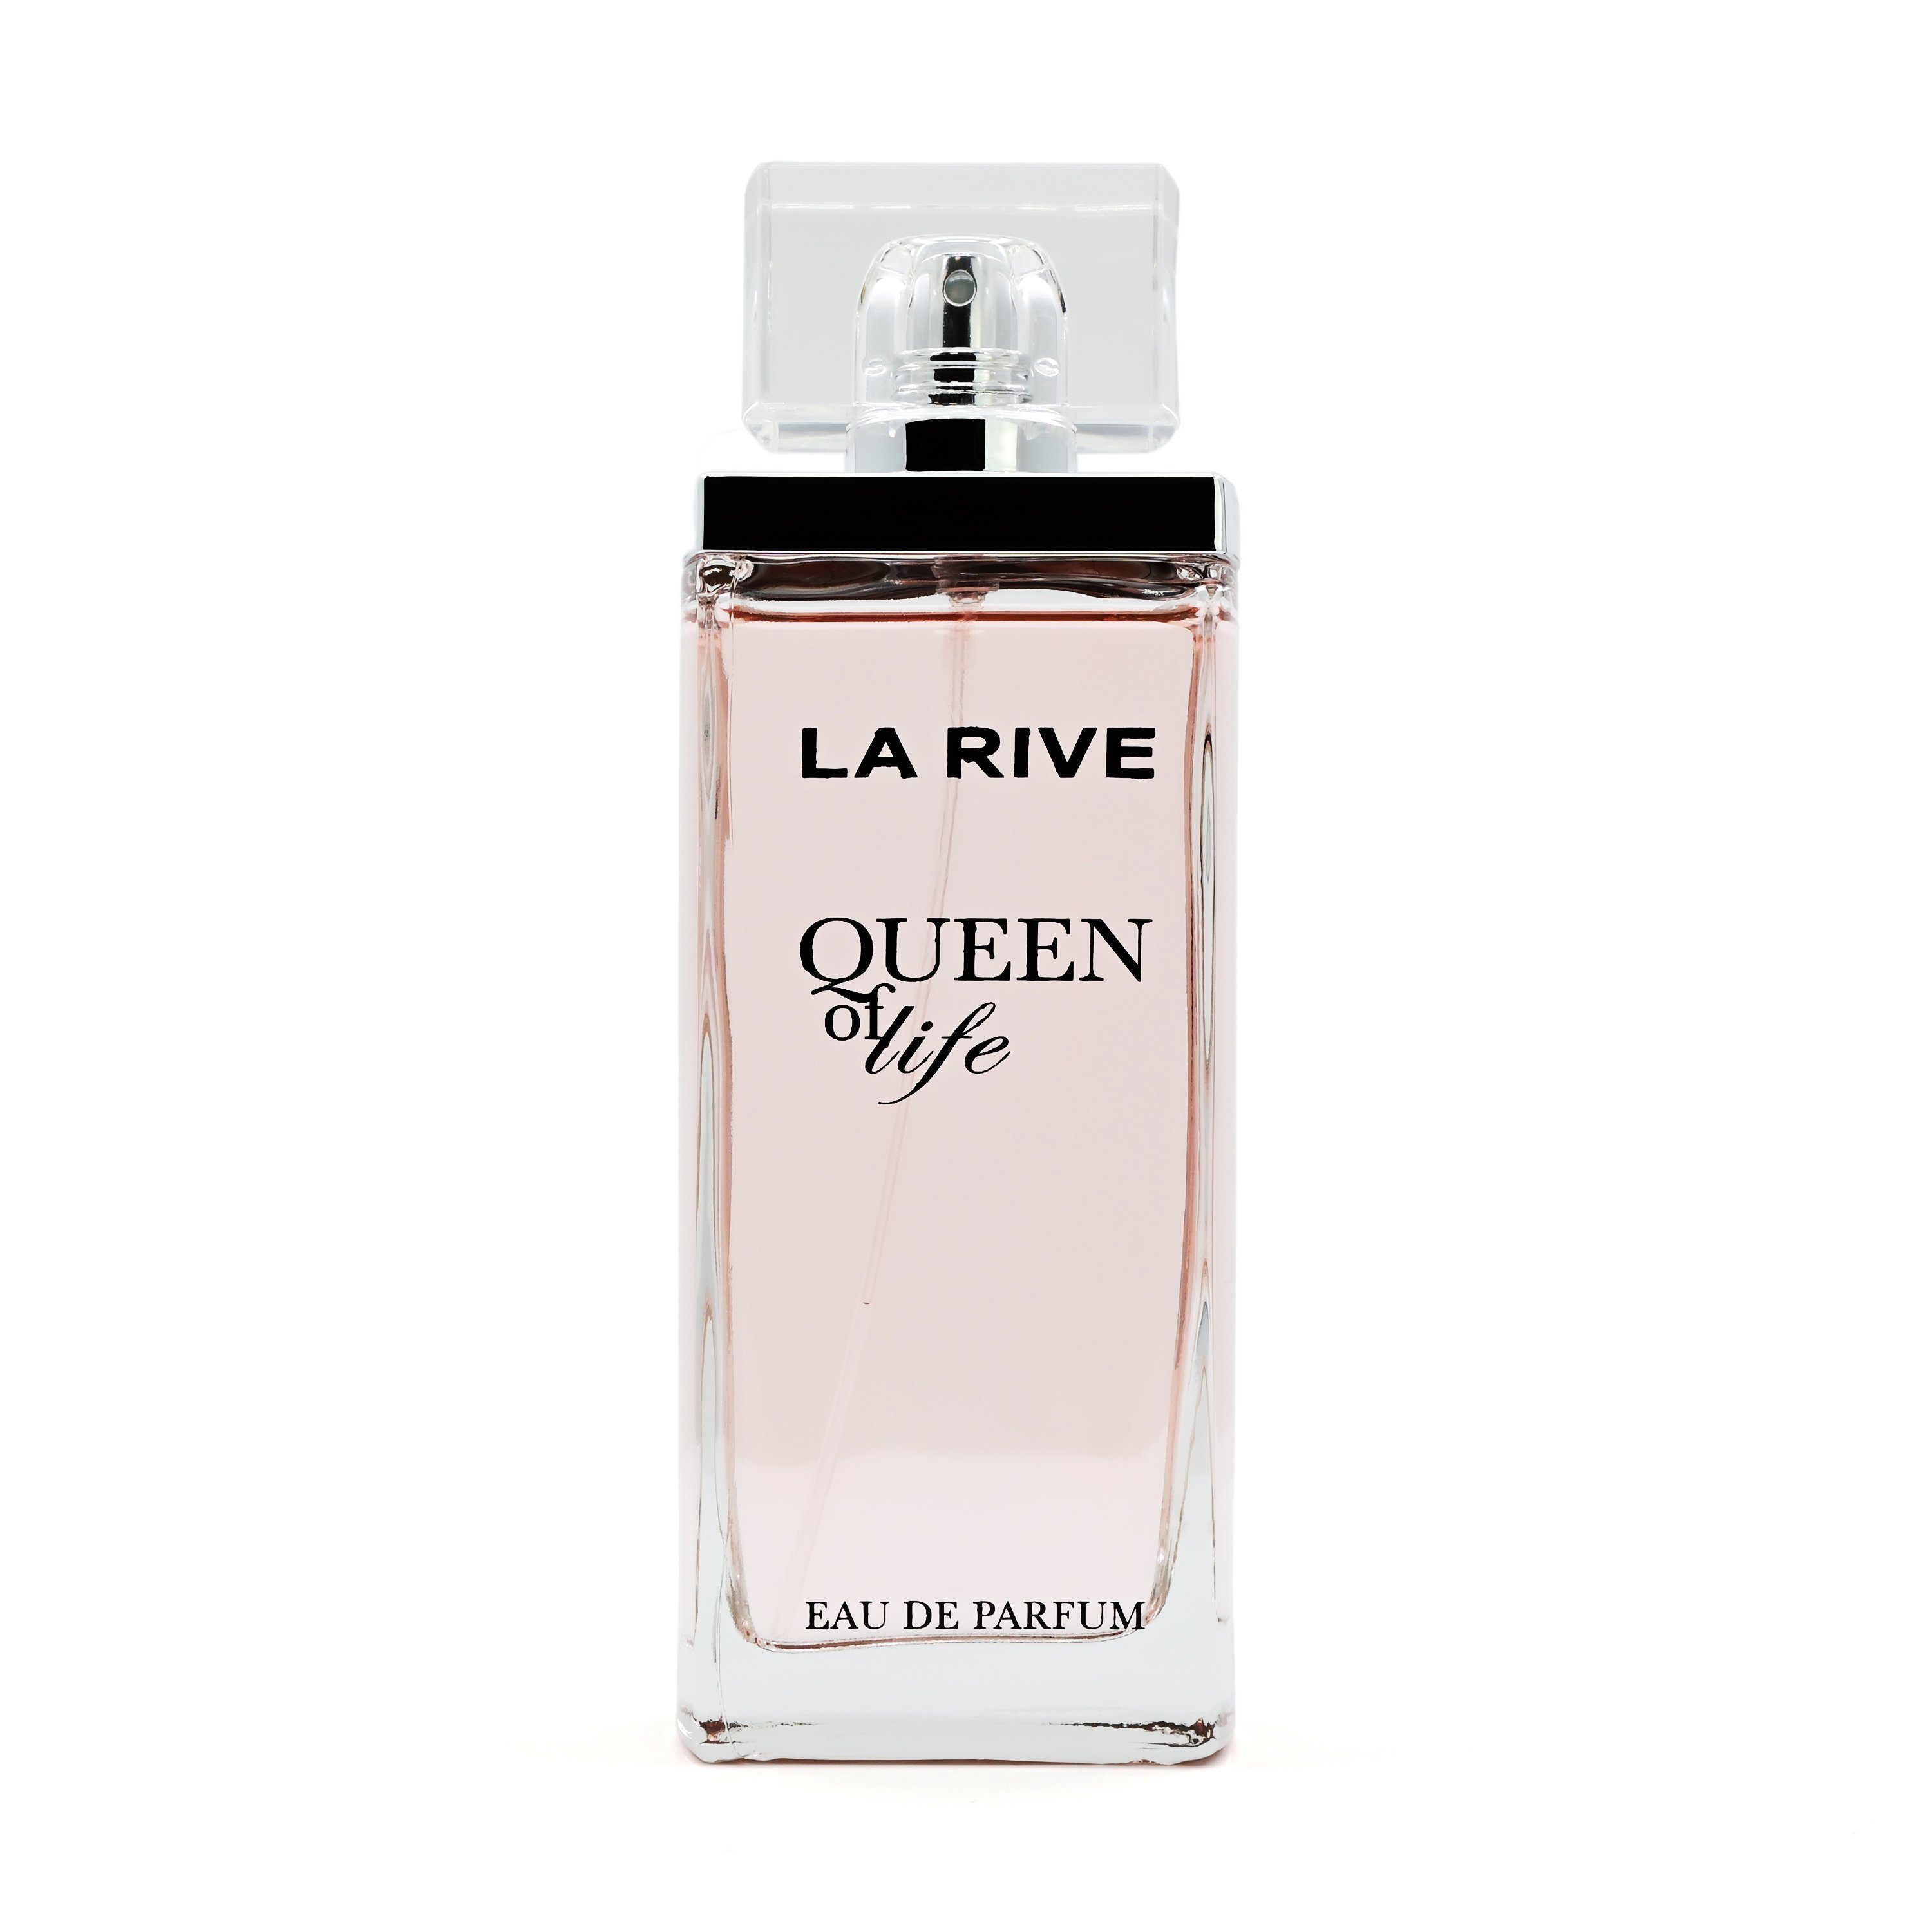 La Rive Eau de Parfum RIVE - of 75 de - Life Queen Eau Parfum ml LA